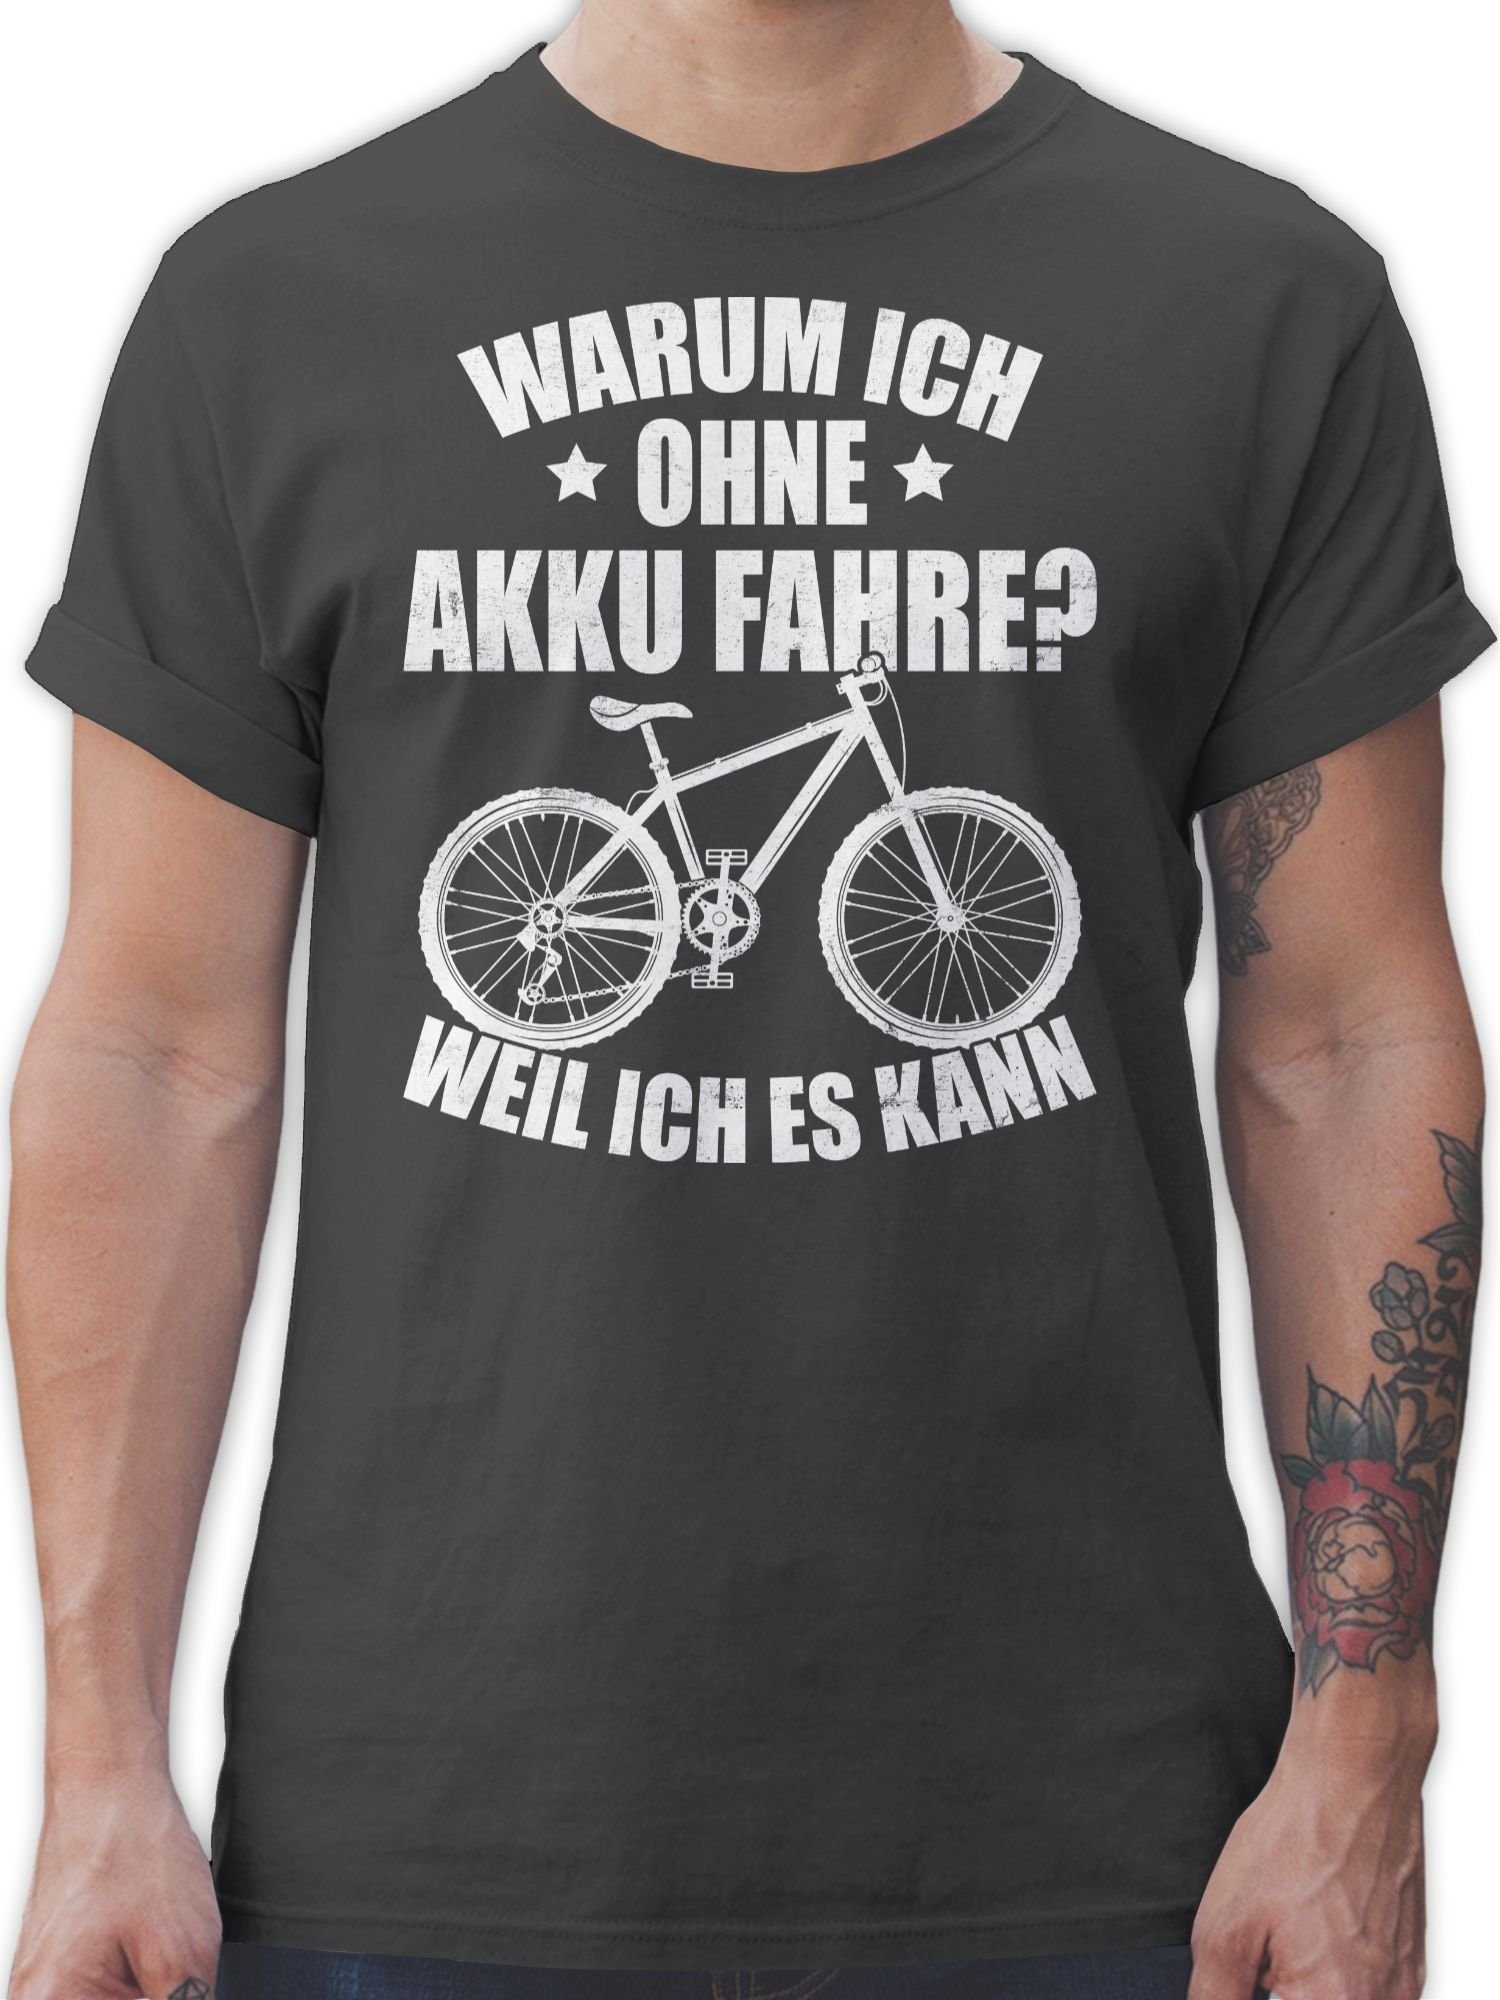 Shirtracer T-Shirt Warum ich ohne Akku fahre - weil ich es kann - weiß Fahrrad Bekleidung Radsport